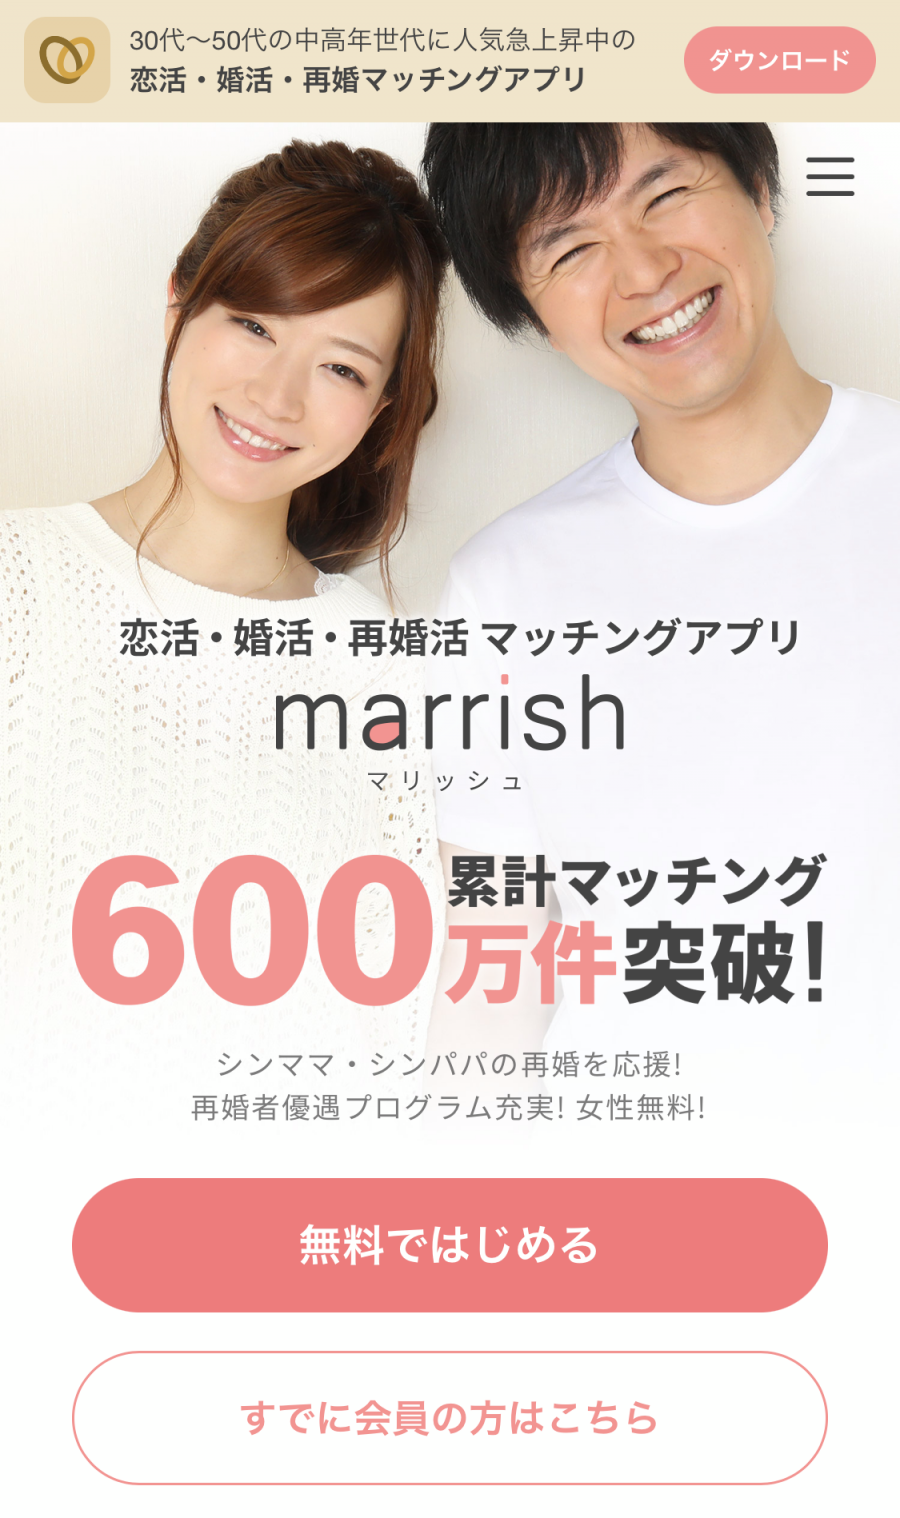 アラフォーにおすすめのマッチングアプリ『マリッシュ』